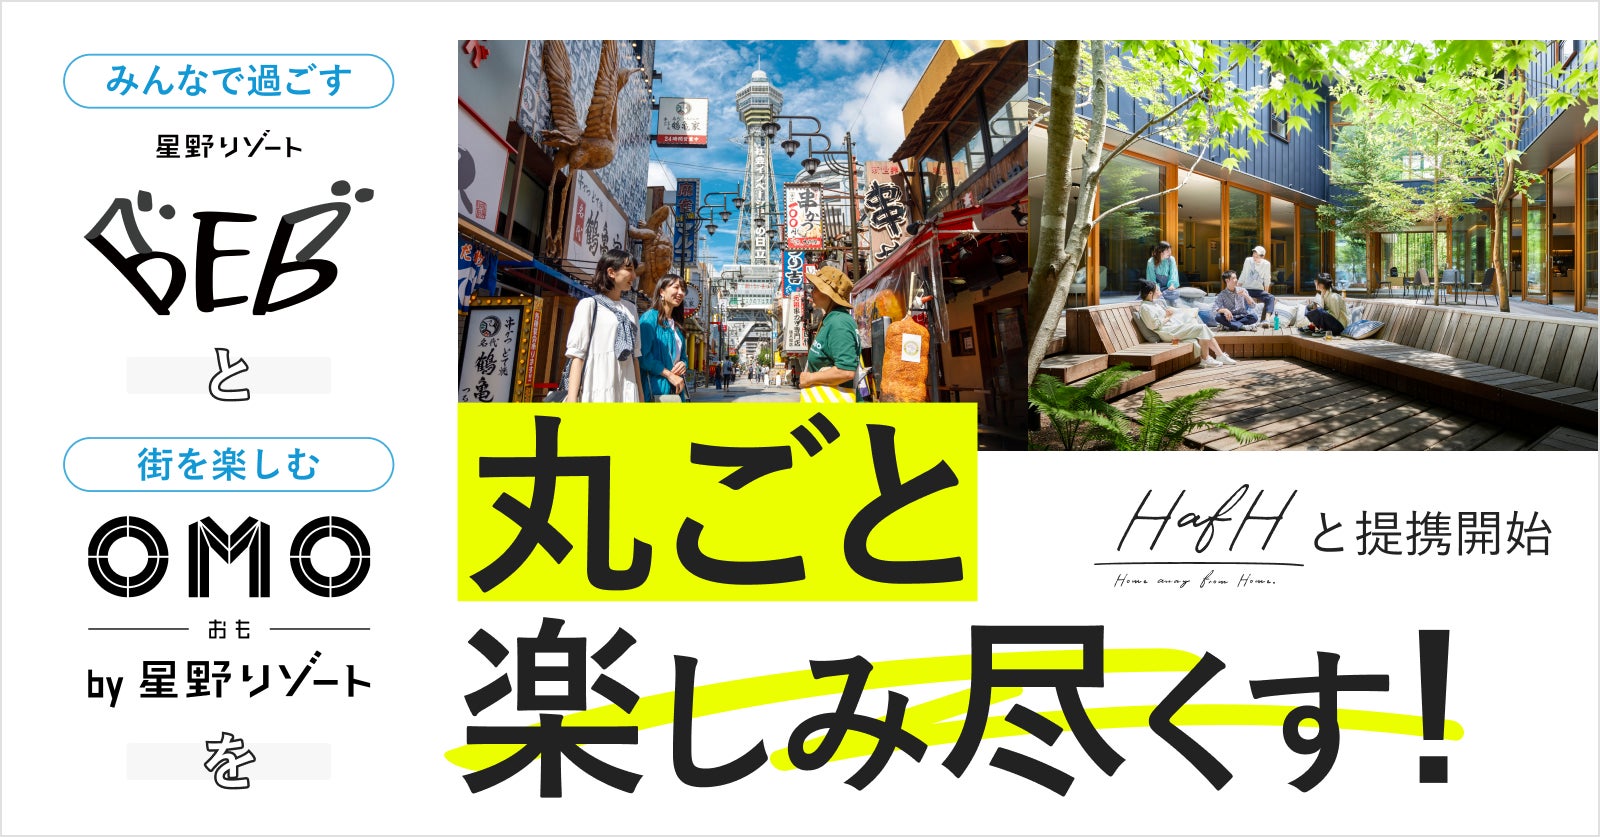 KabuK Style × 星野リゾート 旅のサブスク「HafH（ハフ）」で提携開始